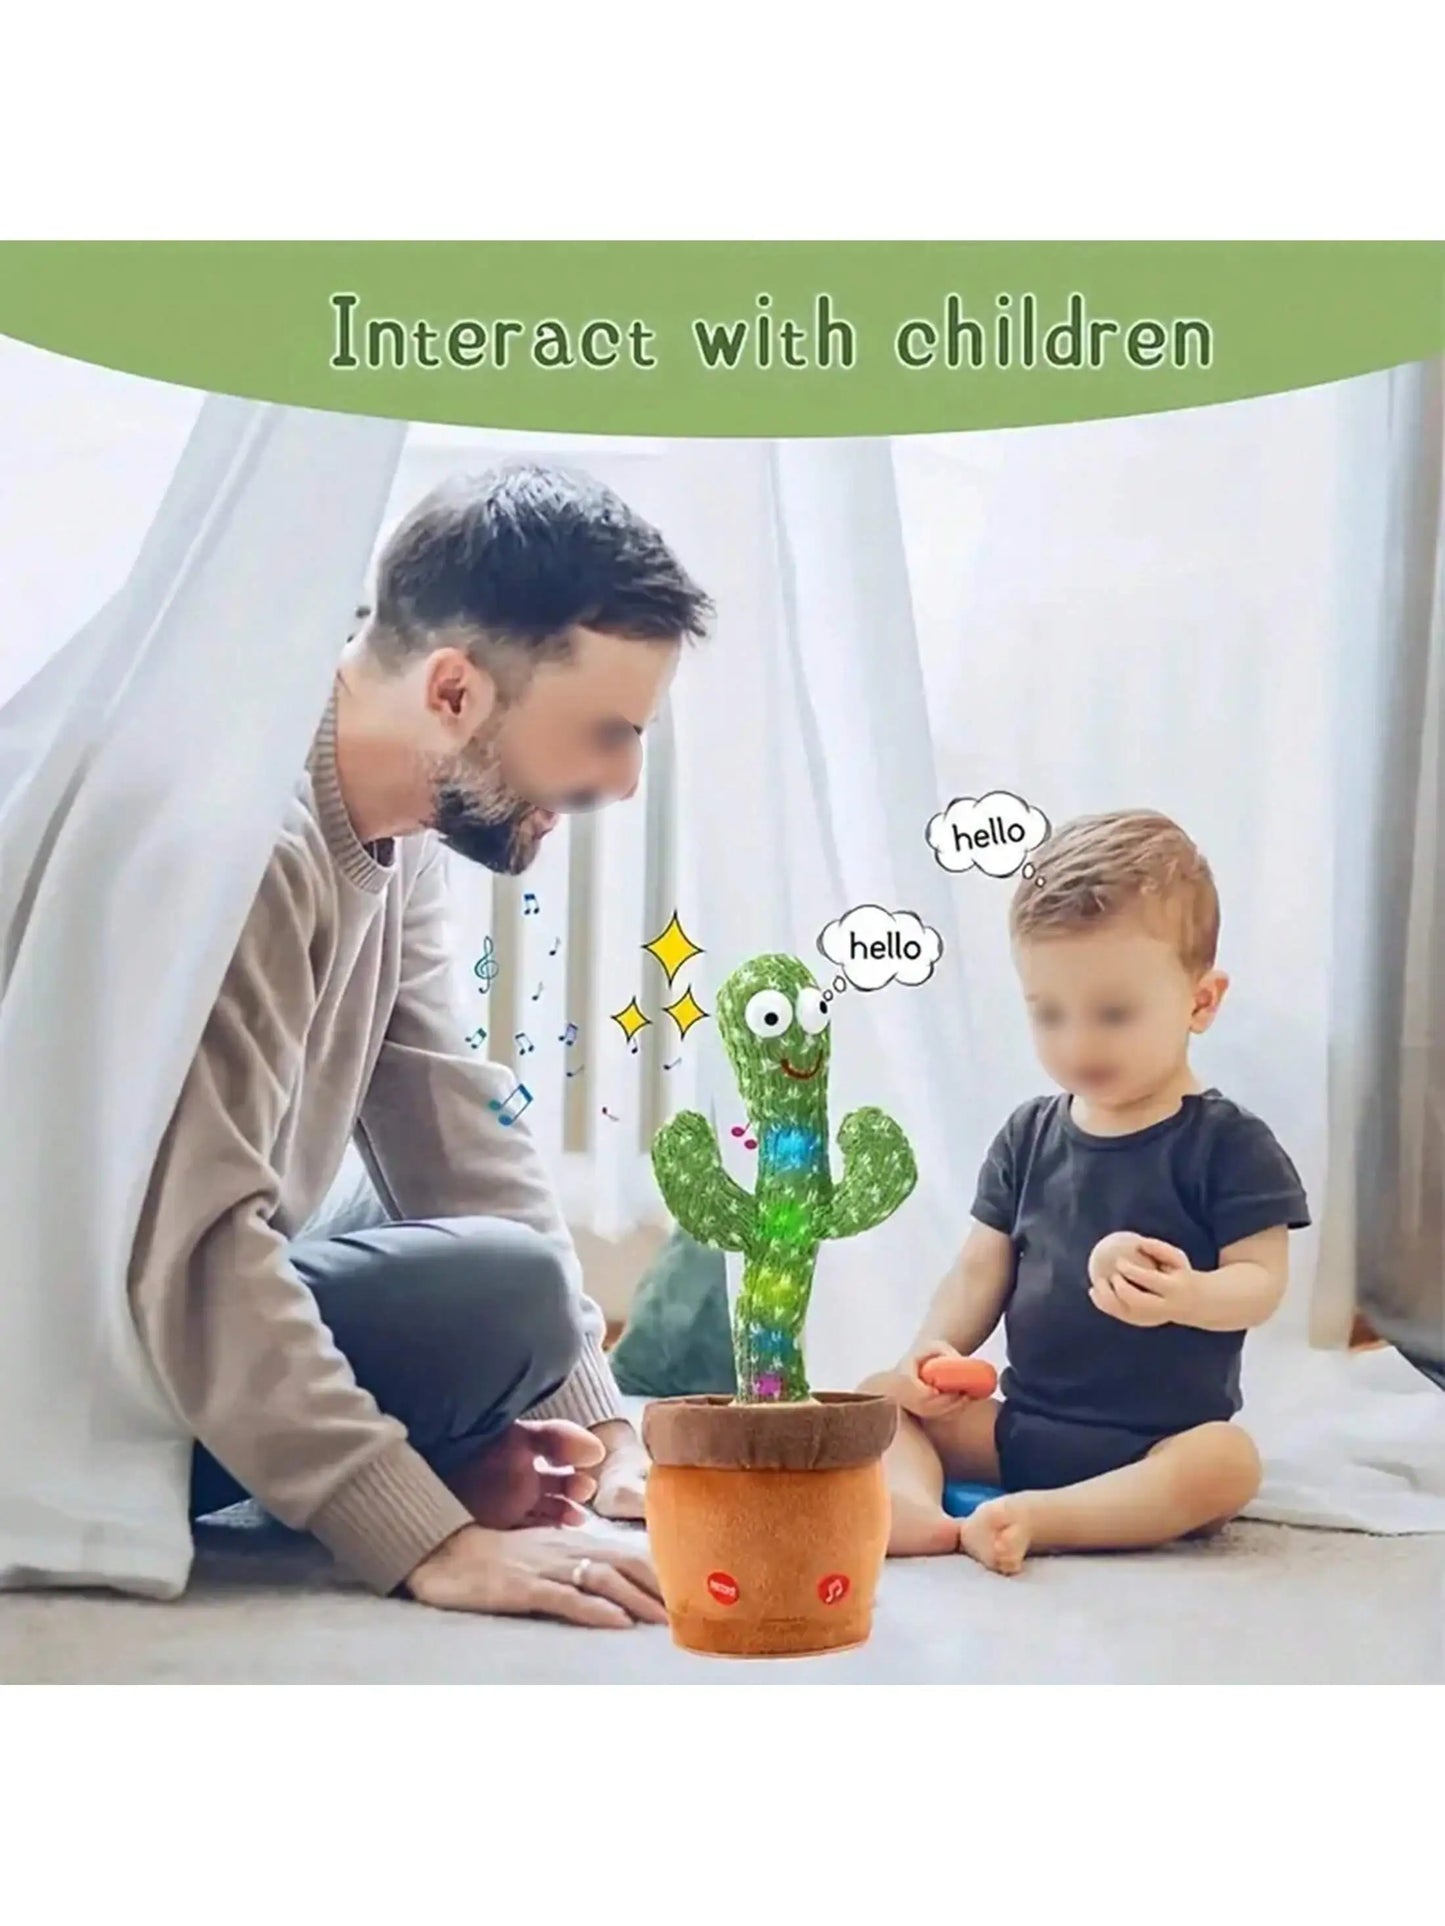 Dancing Cactus - 120 Songs Talking & Singing Plush Toy for Kids